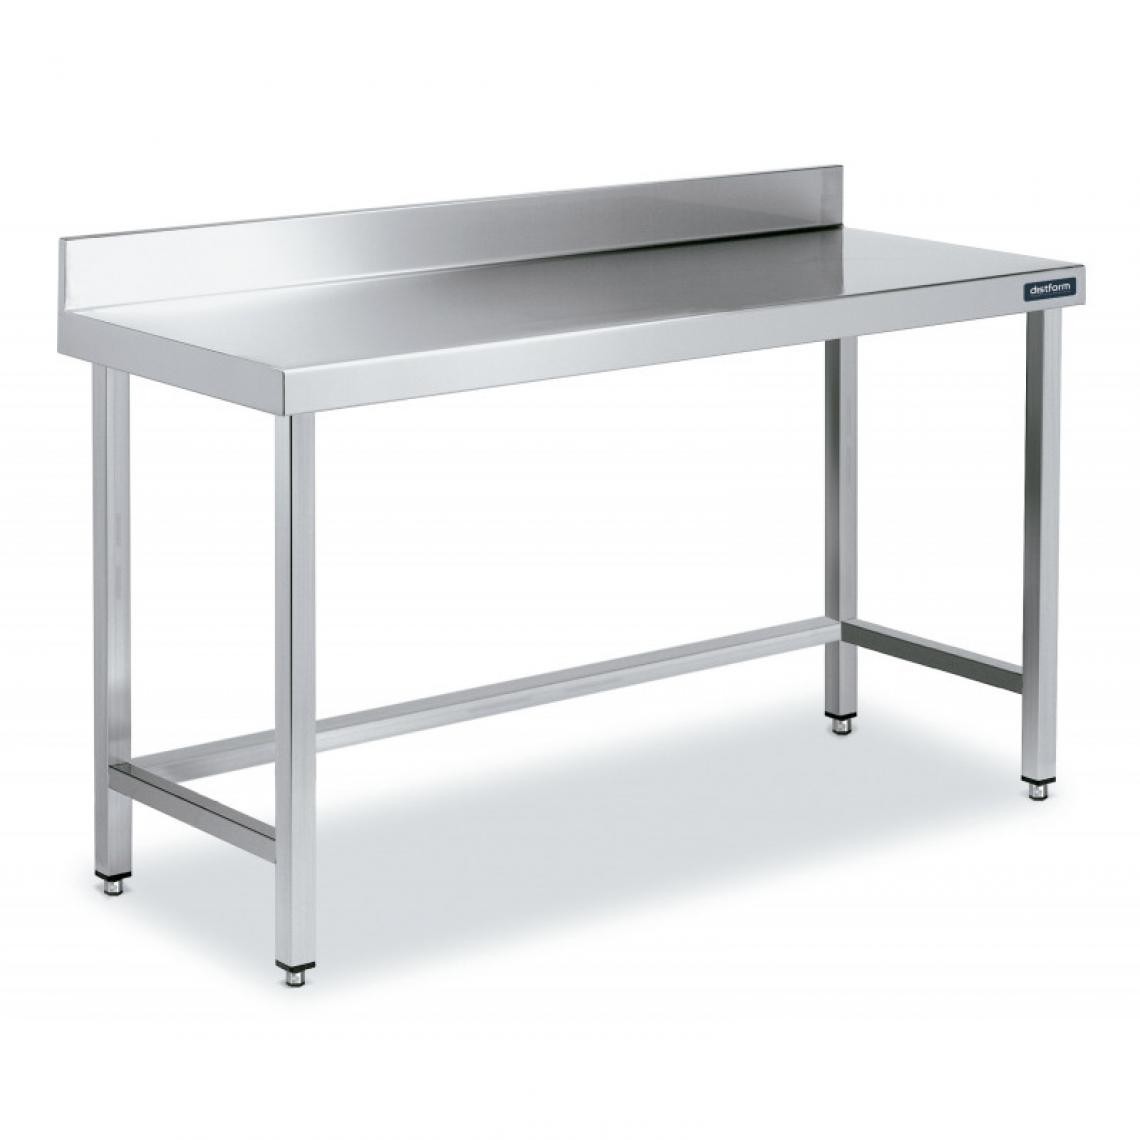 DISTFORM - Table Inox de Travail avec Dosseret Gamme 900 - Distform - Acier inoxydable2600x900 - Tables à manger